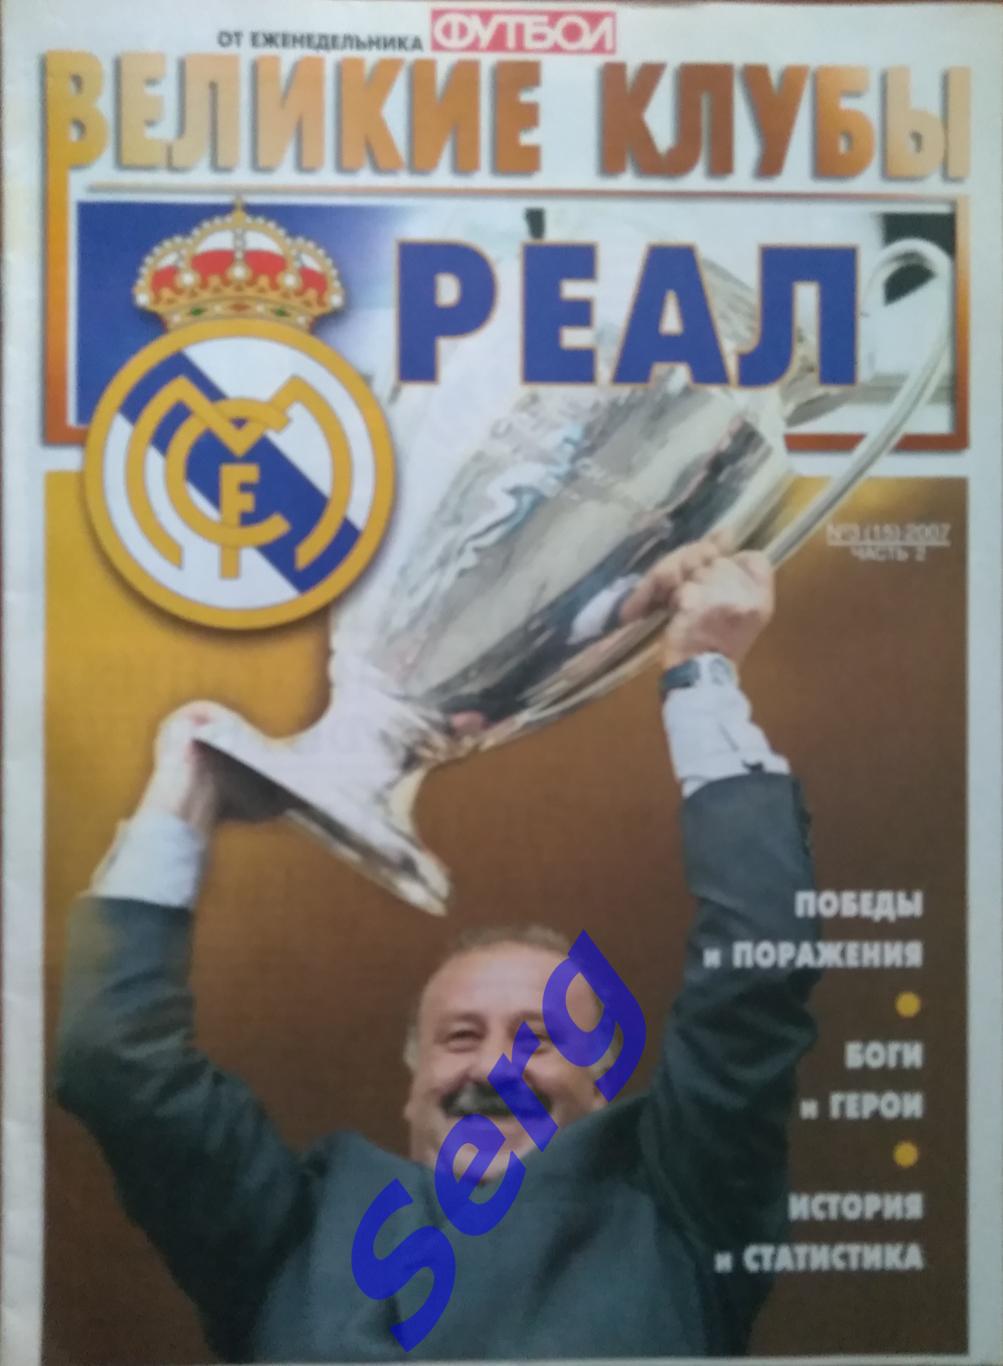 Еженедельник Футбол. Спецвыпуск Великие клубы. Реал Мадрид. №3 2007